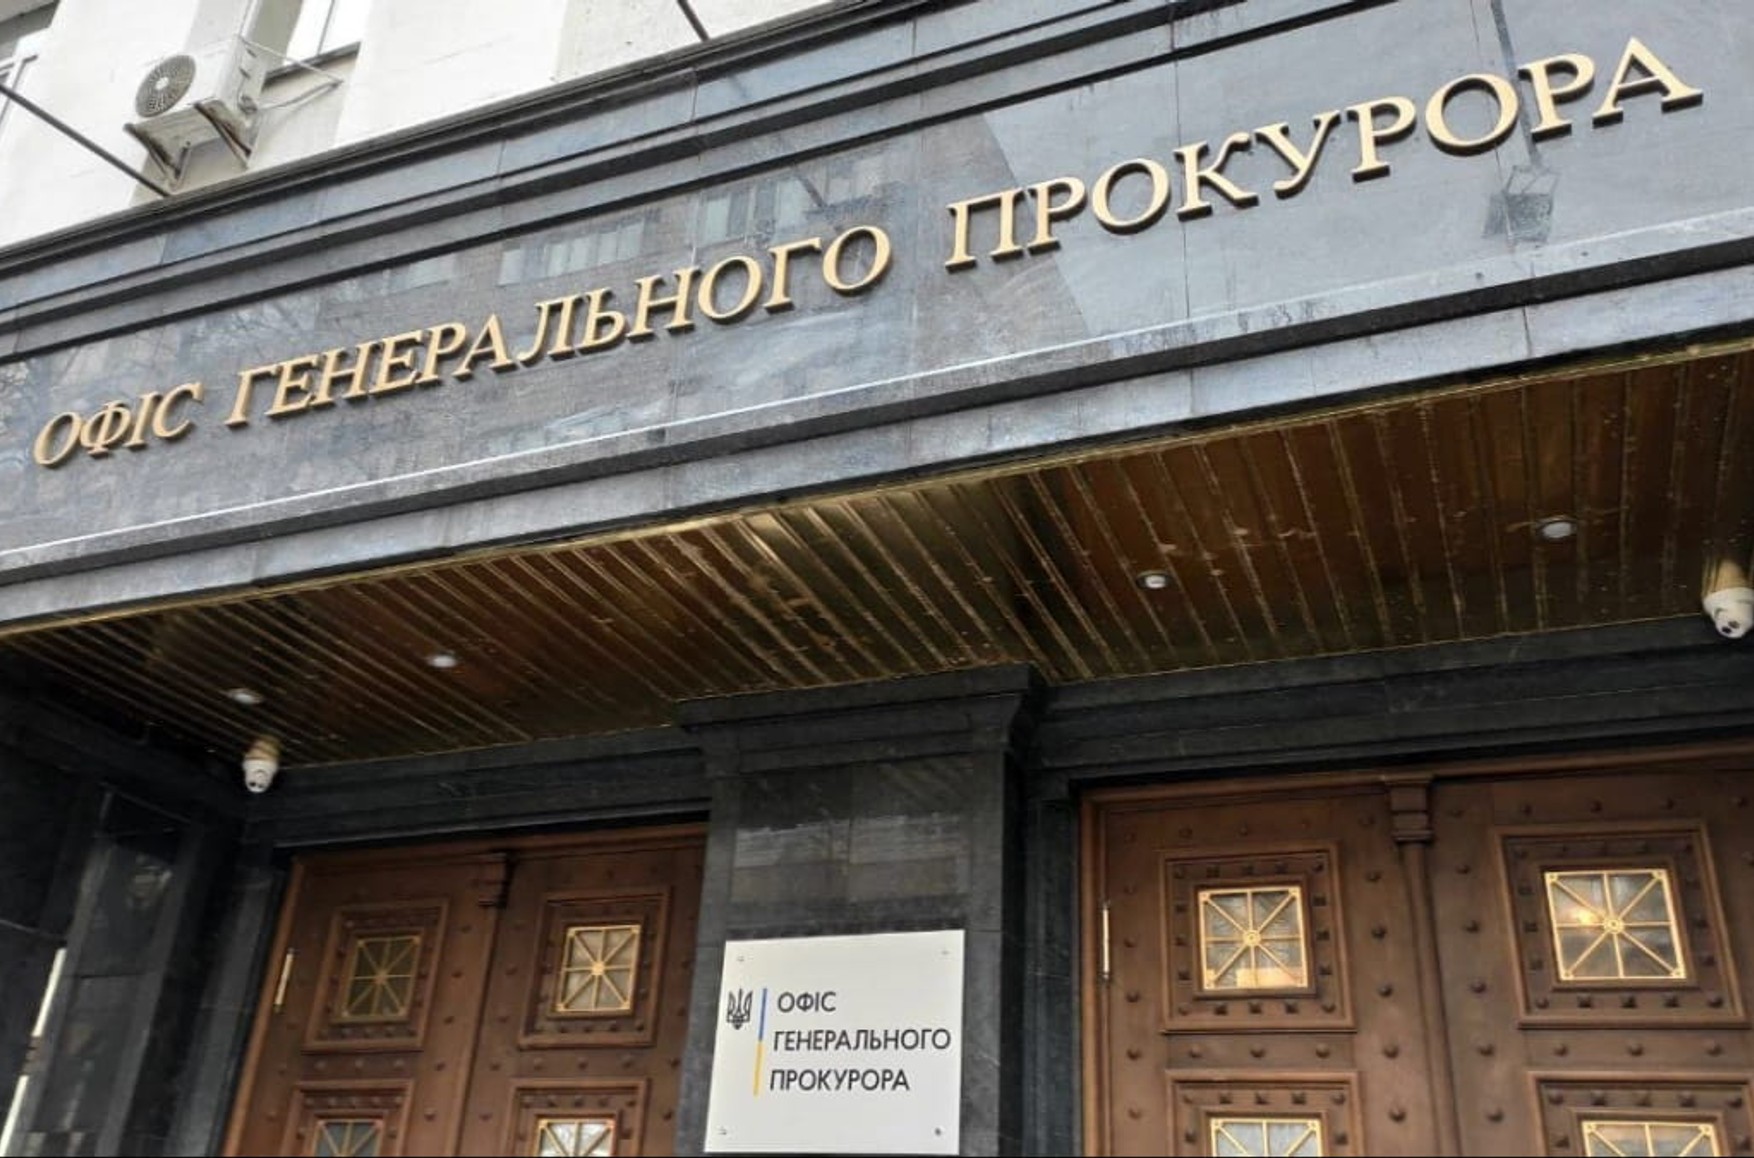 Генпрокуратура Украины заподозрила российского военного в том, что он застрелил хозяина частного дома и изнасиловал его жену при ребенке